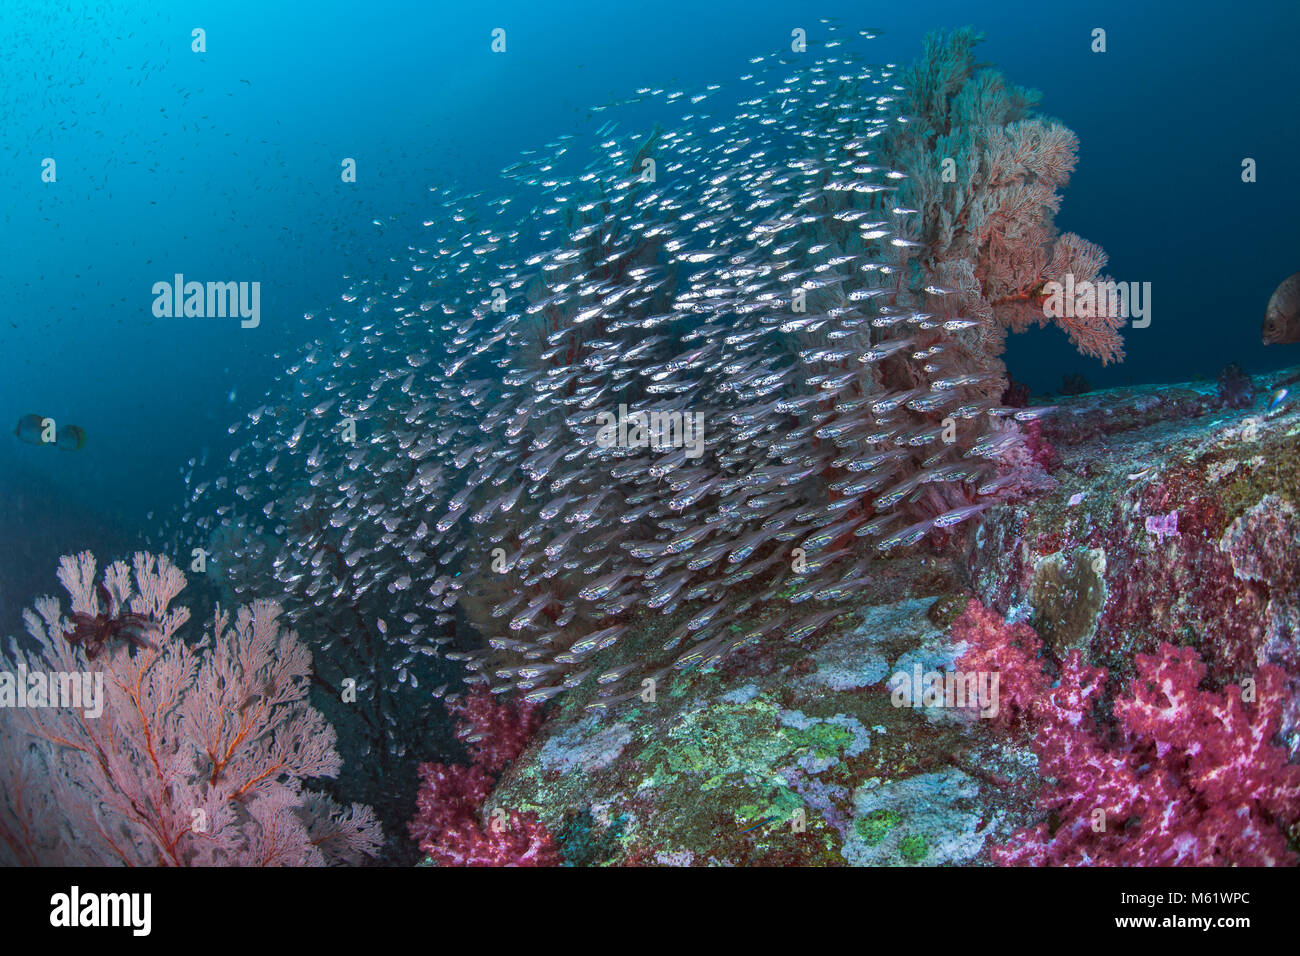 Schule der transluzente Silber glassfish spiegeln die Farbe ihrer Umgebung wie ein funkelndes Kaleidoskop. Richelieu Rock, Andaman Sea, Thailand. Stockfoto